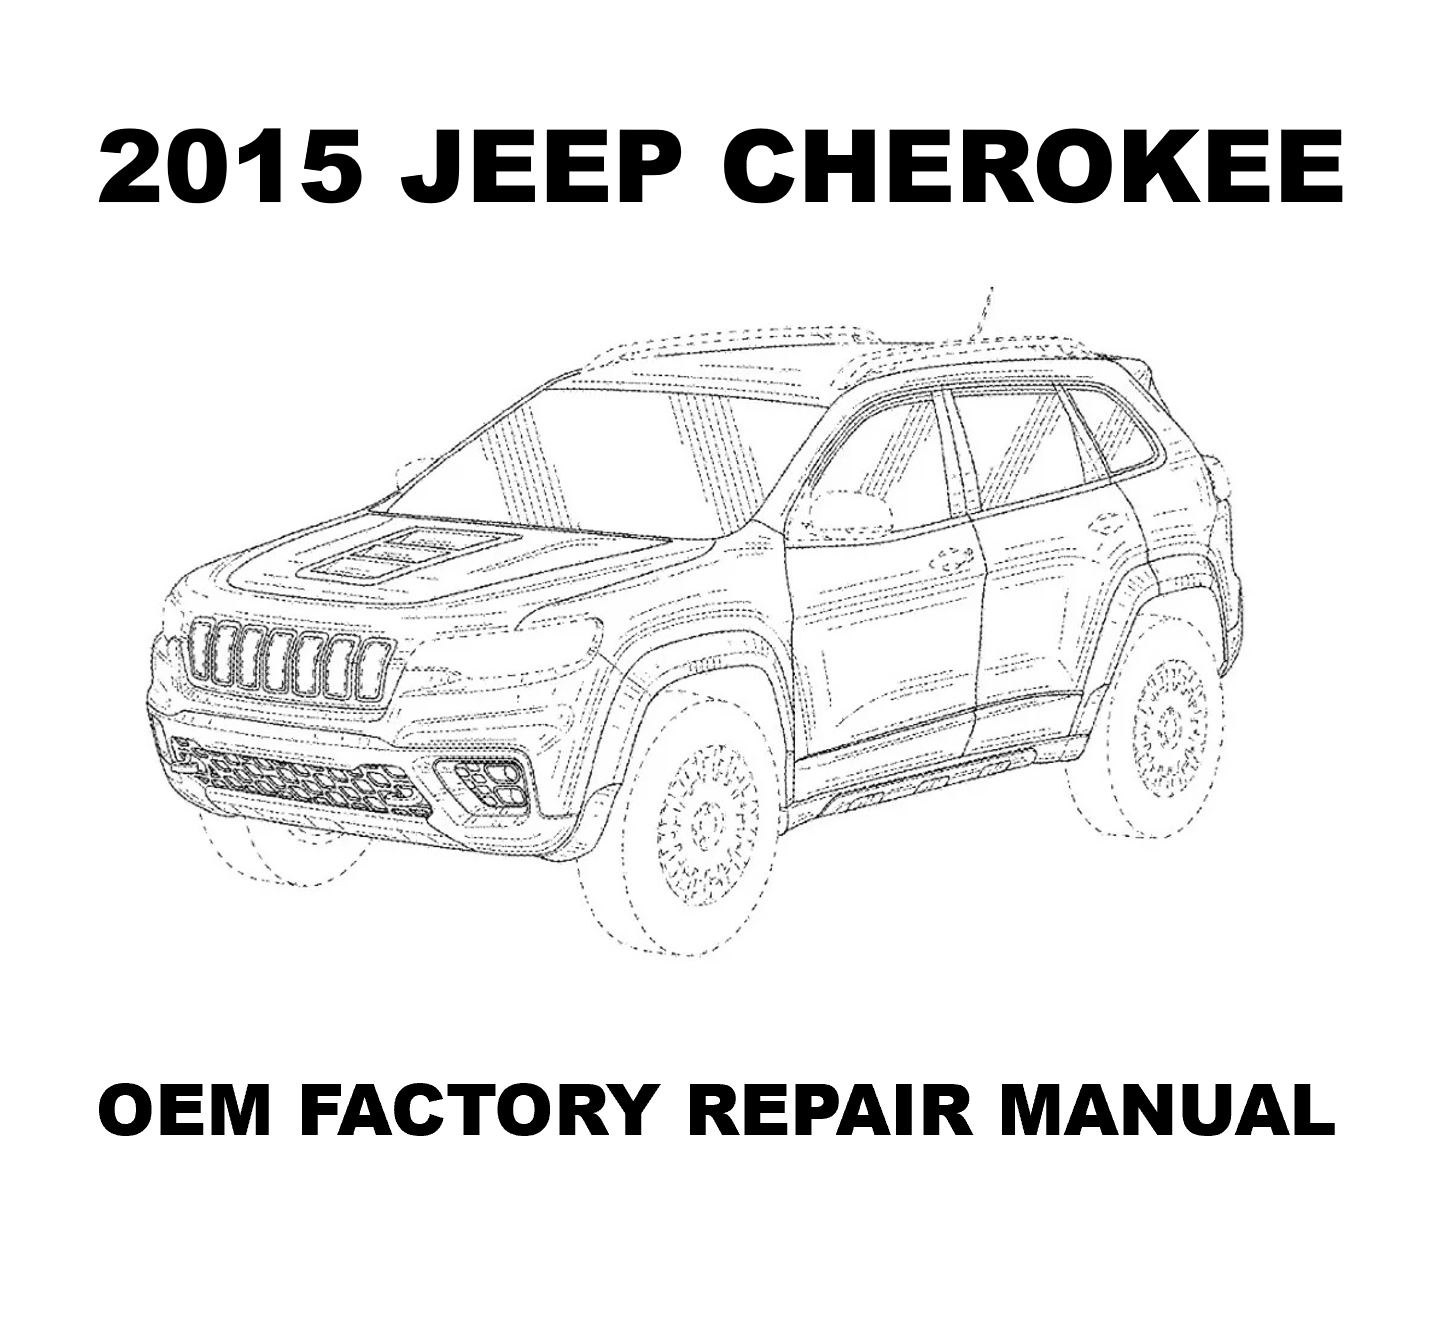 2015_jeep_cherokee_repair_manual_1437